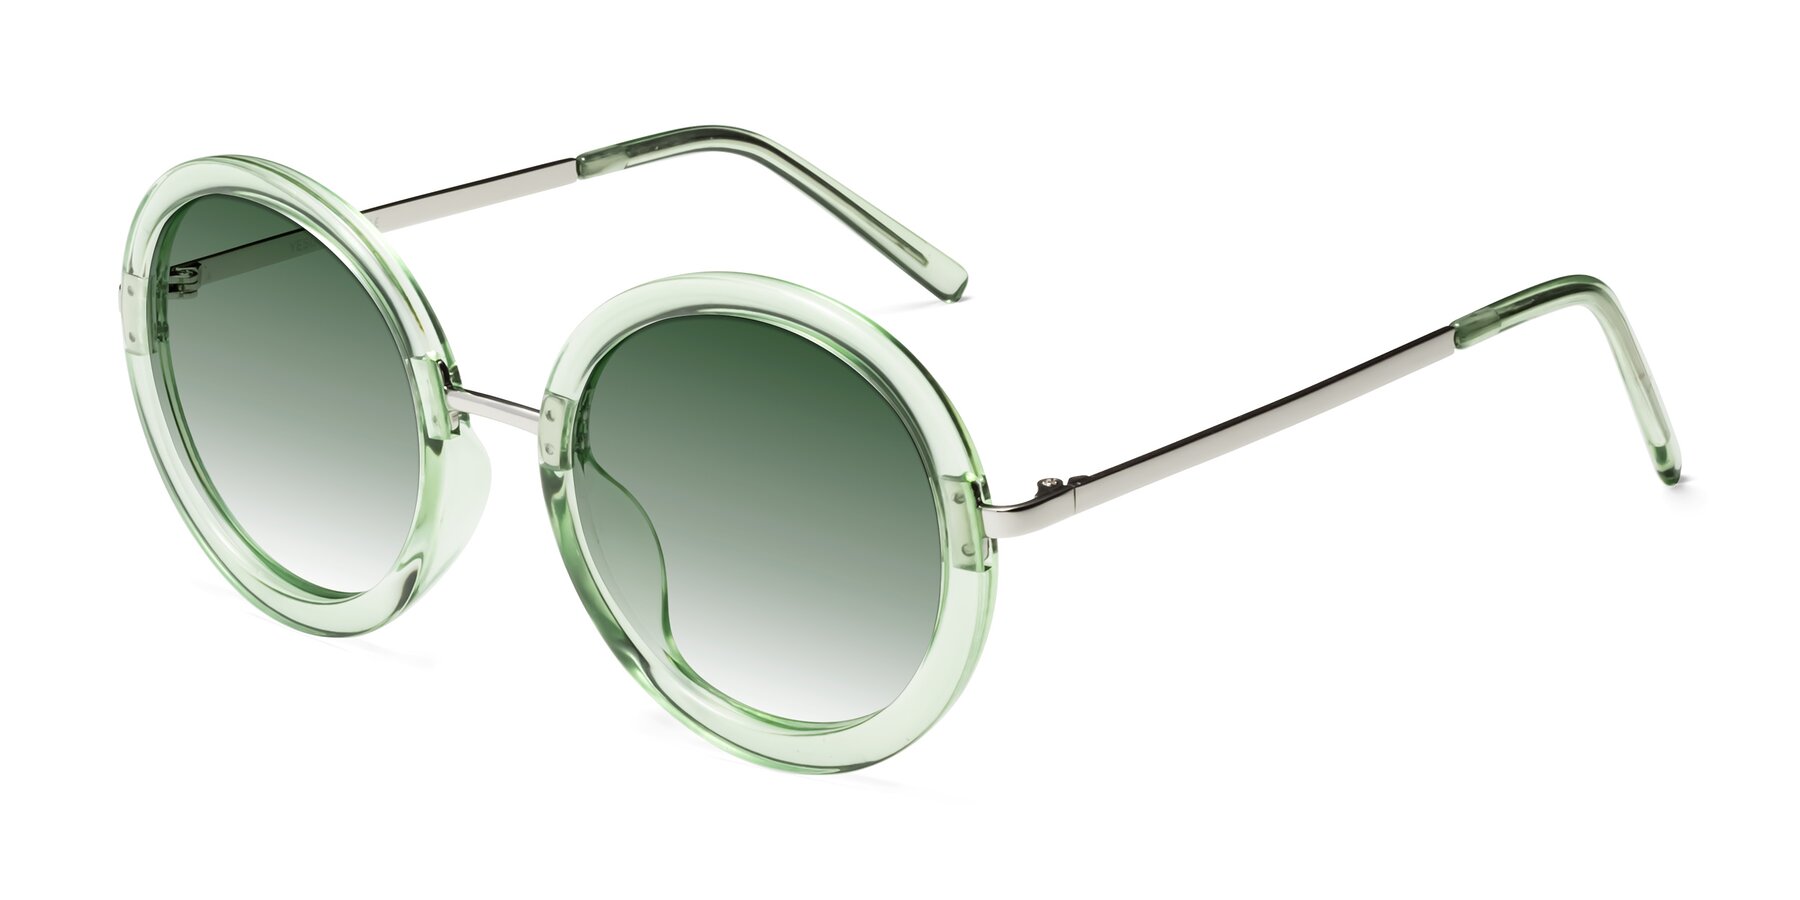 Round Sunglasses, Green Gradient Lenses